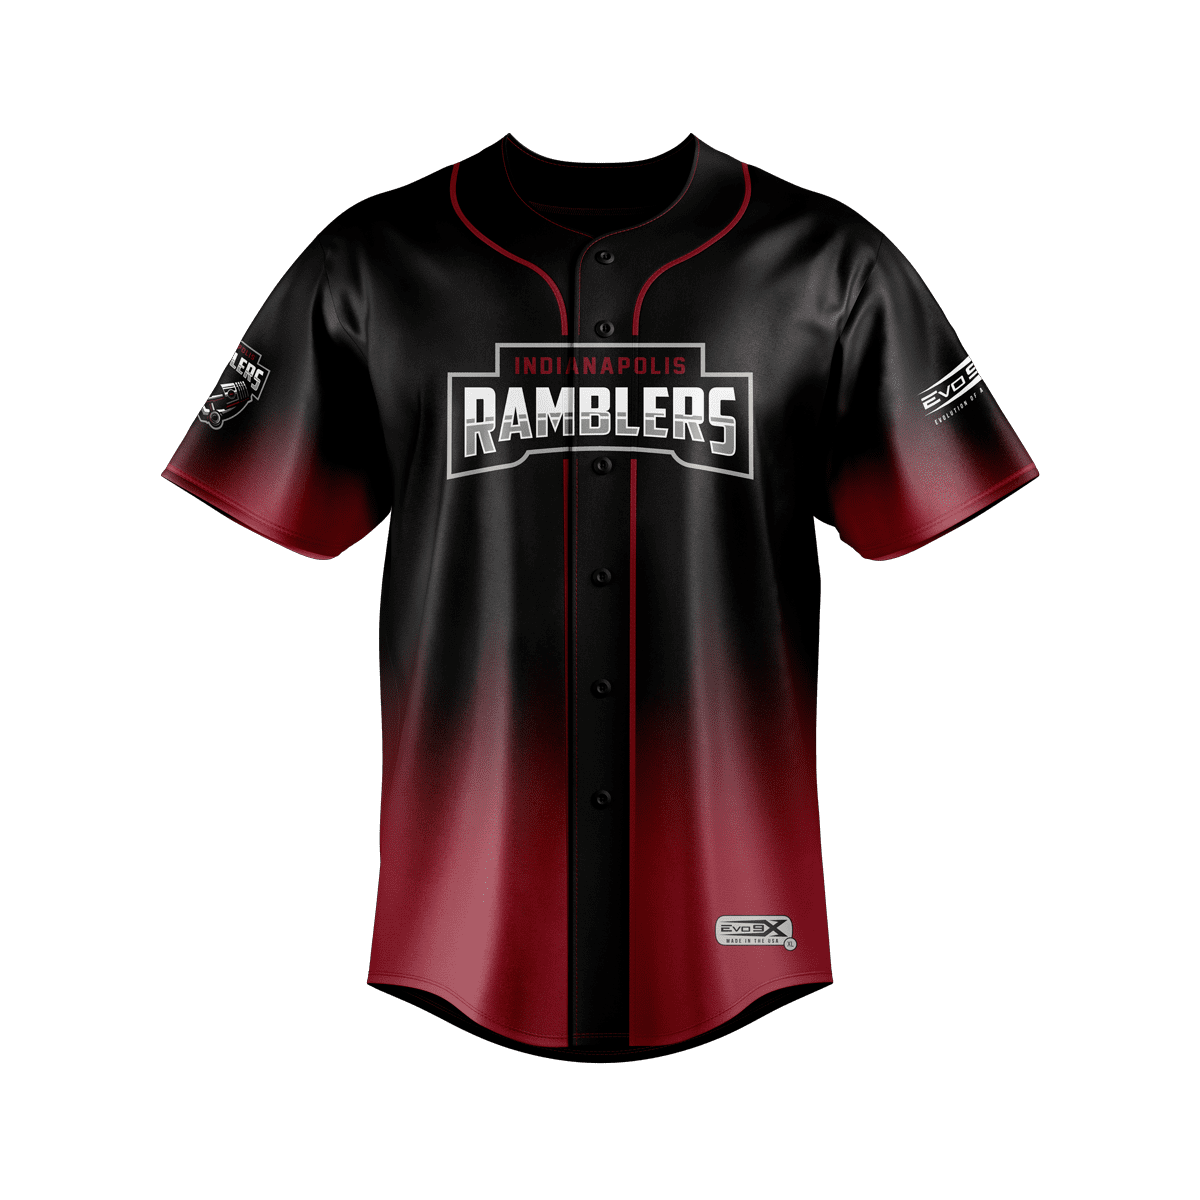 Indianapolis Ramblers Baseball Jersey